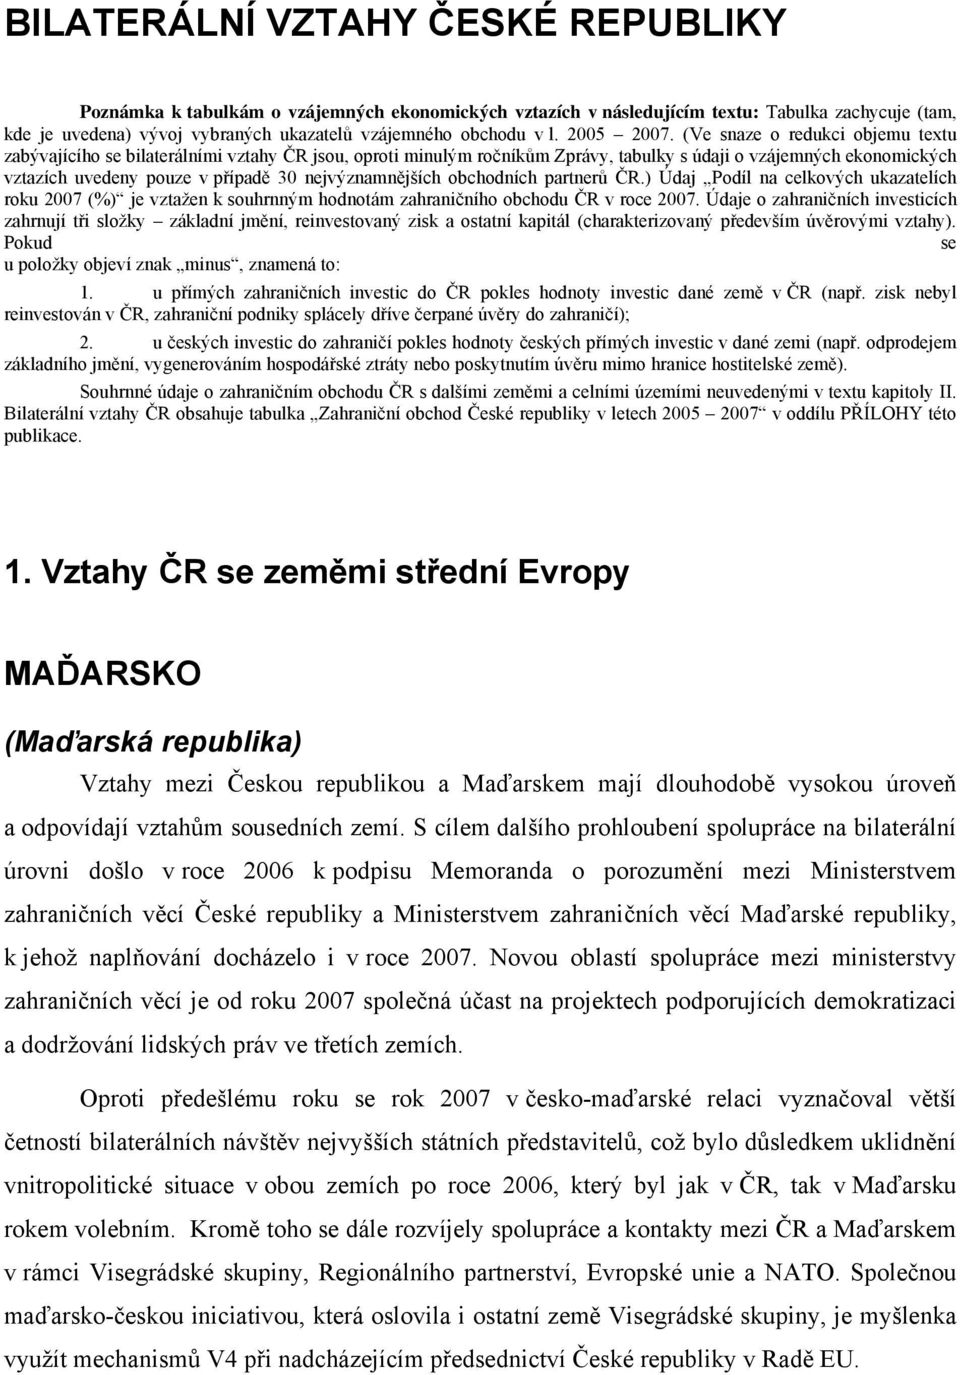 (Ve snaze o redukci objemu textu zabývajícího se bilaterálními vztahy ČR jsou, oproti minulým ročníkům Zprávy, tabulky s údaji o vzájemných ekonomických vztazích uvedeny pouze v případě 30